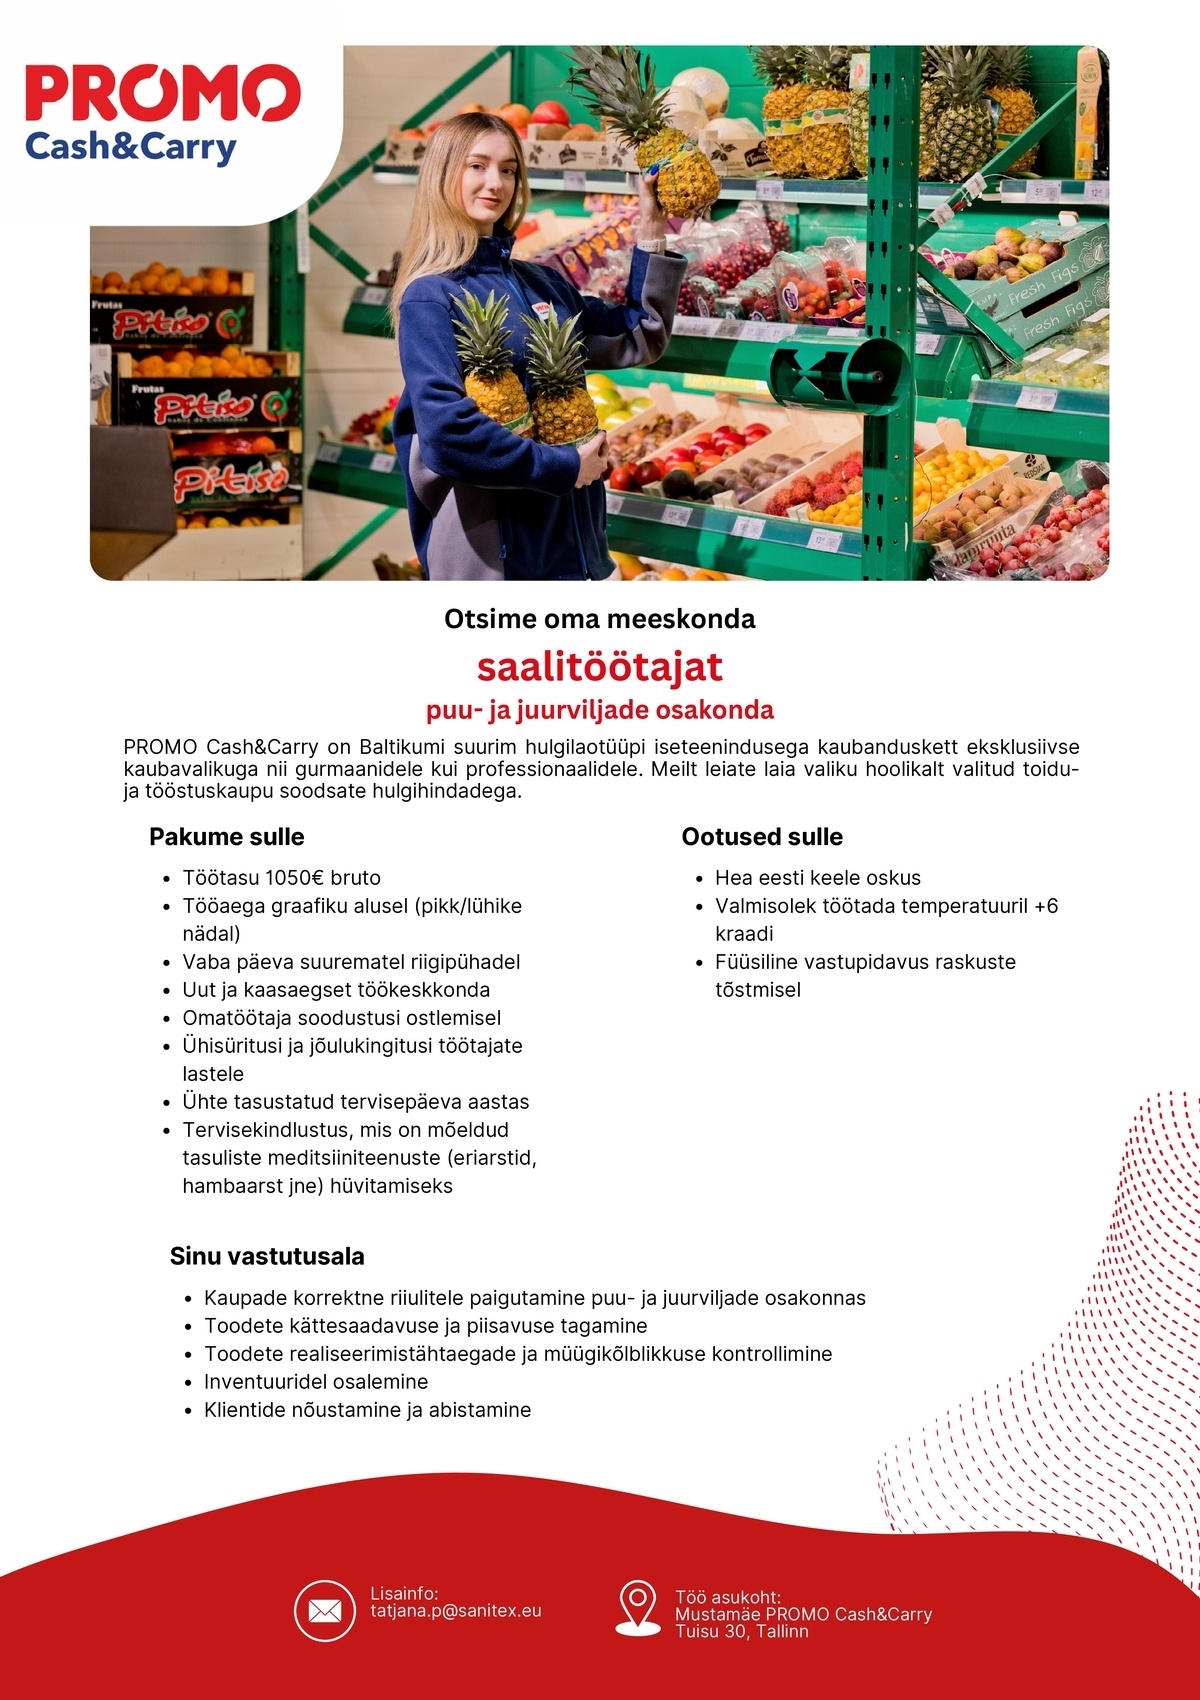 Sanitex OÜ Saalitöötaja puu- ja juurviljade osakonnas Mustamäe Promo Cash&Carry hulgikaupluses